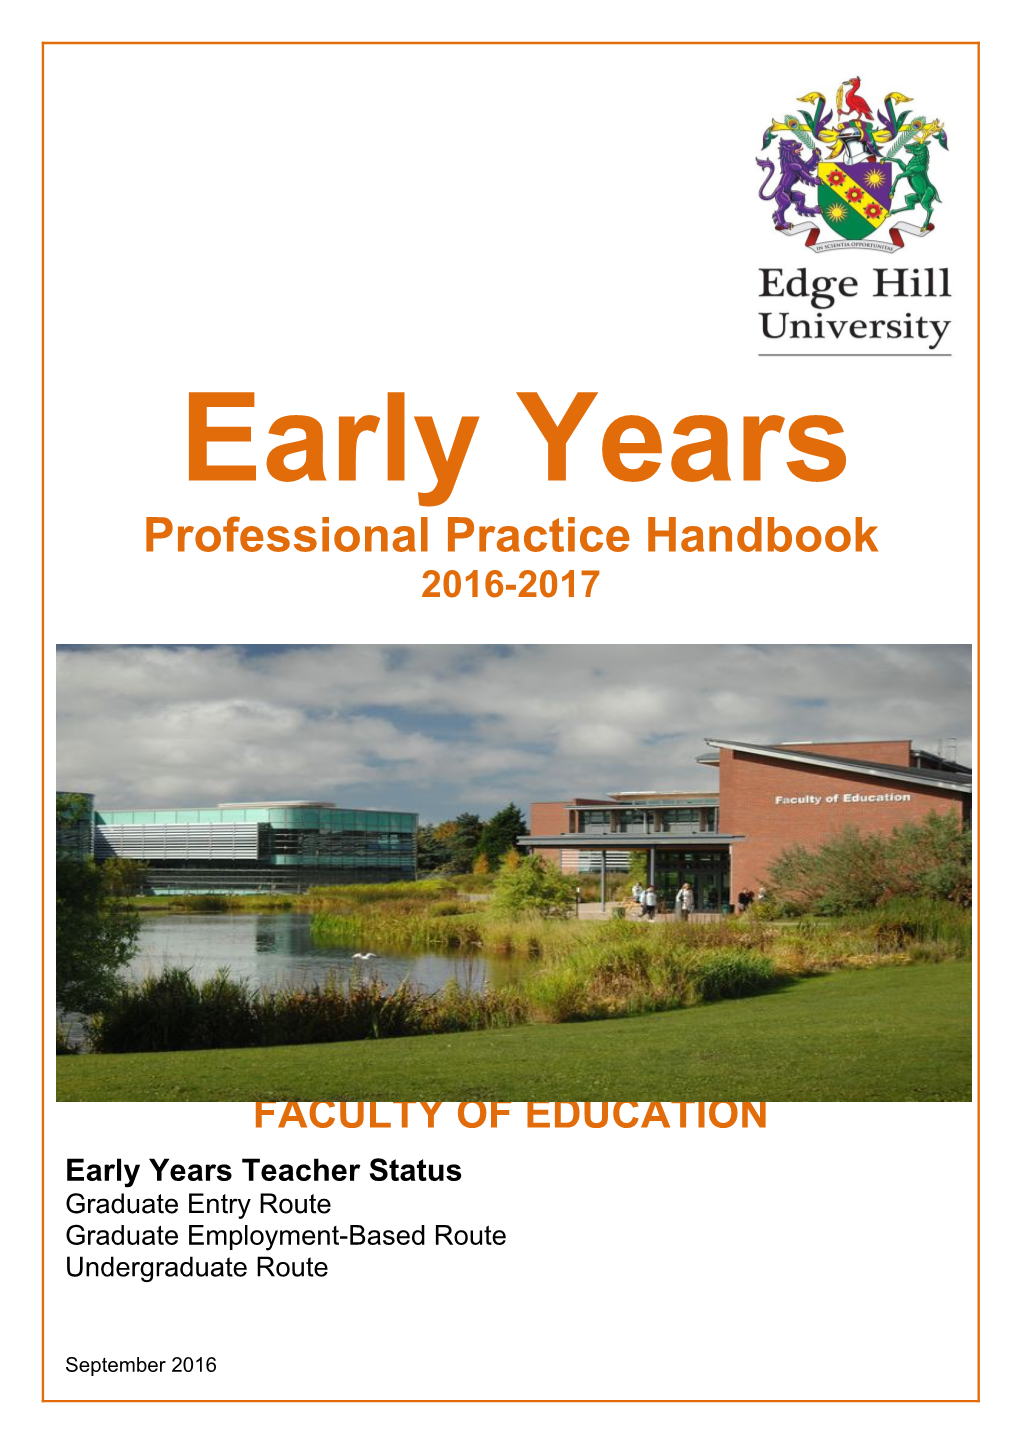 Professional Practice Handbook